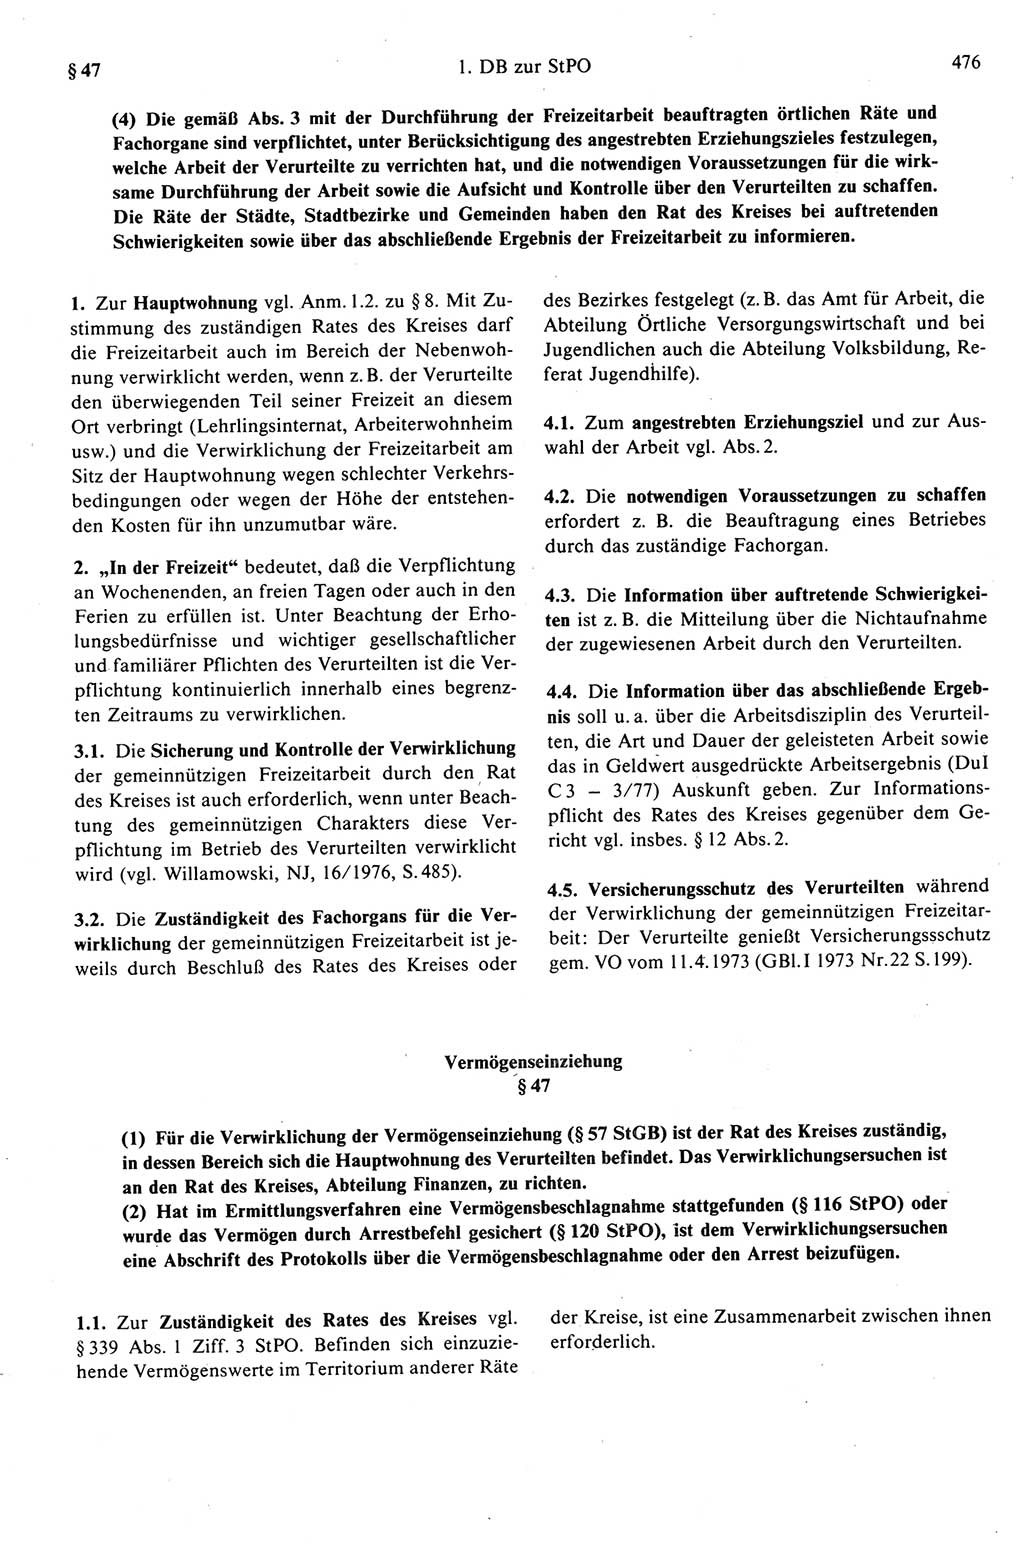 Strafprozeßrecht der DDR (Deutsche Demokratische Republik), Kommentar zur Strafprozeßordnung (StPO) 1989, Seite 476 (Strafprozeßr. DDR Komm. StPO 1989, S. 476)